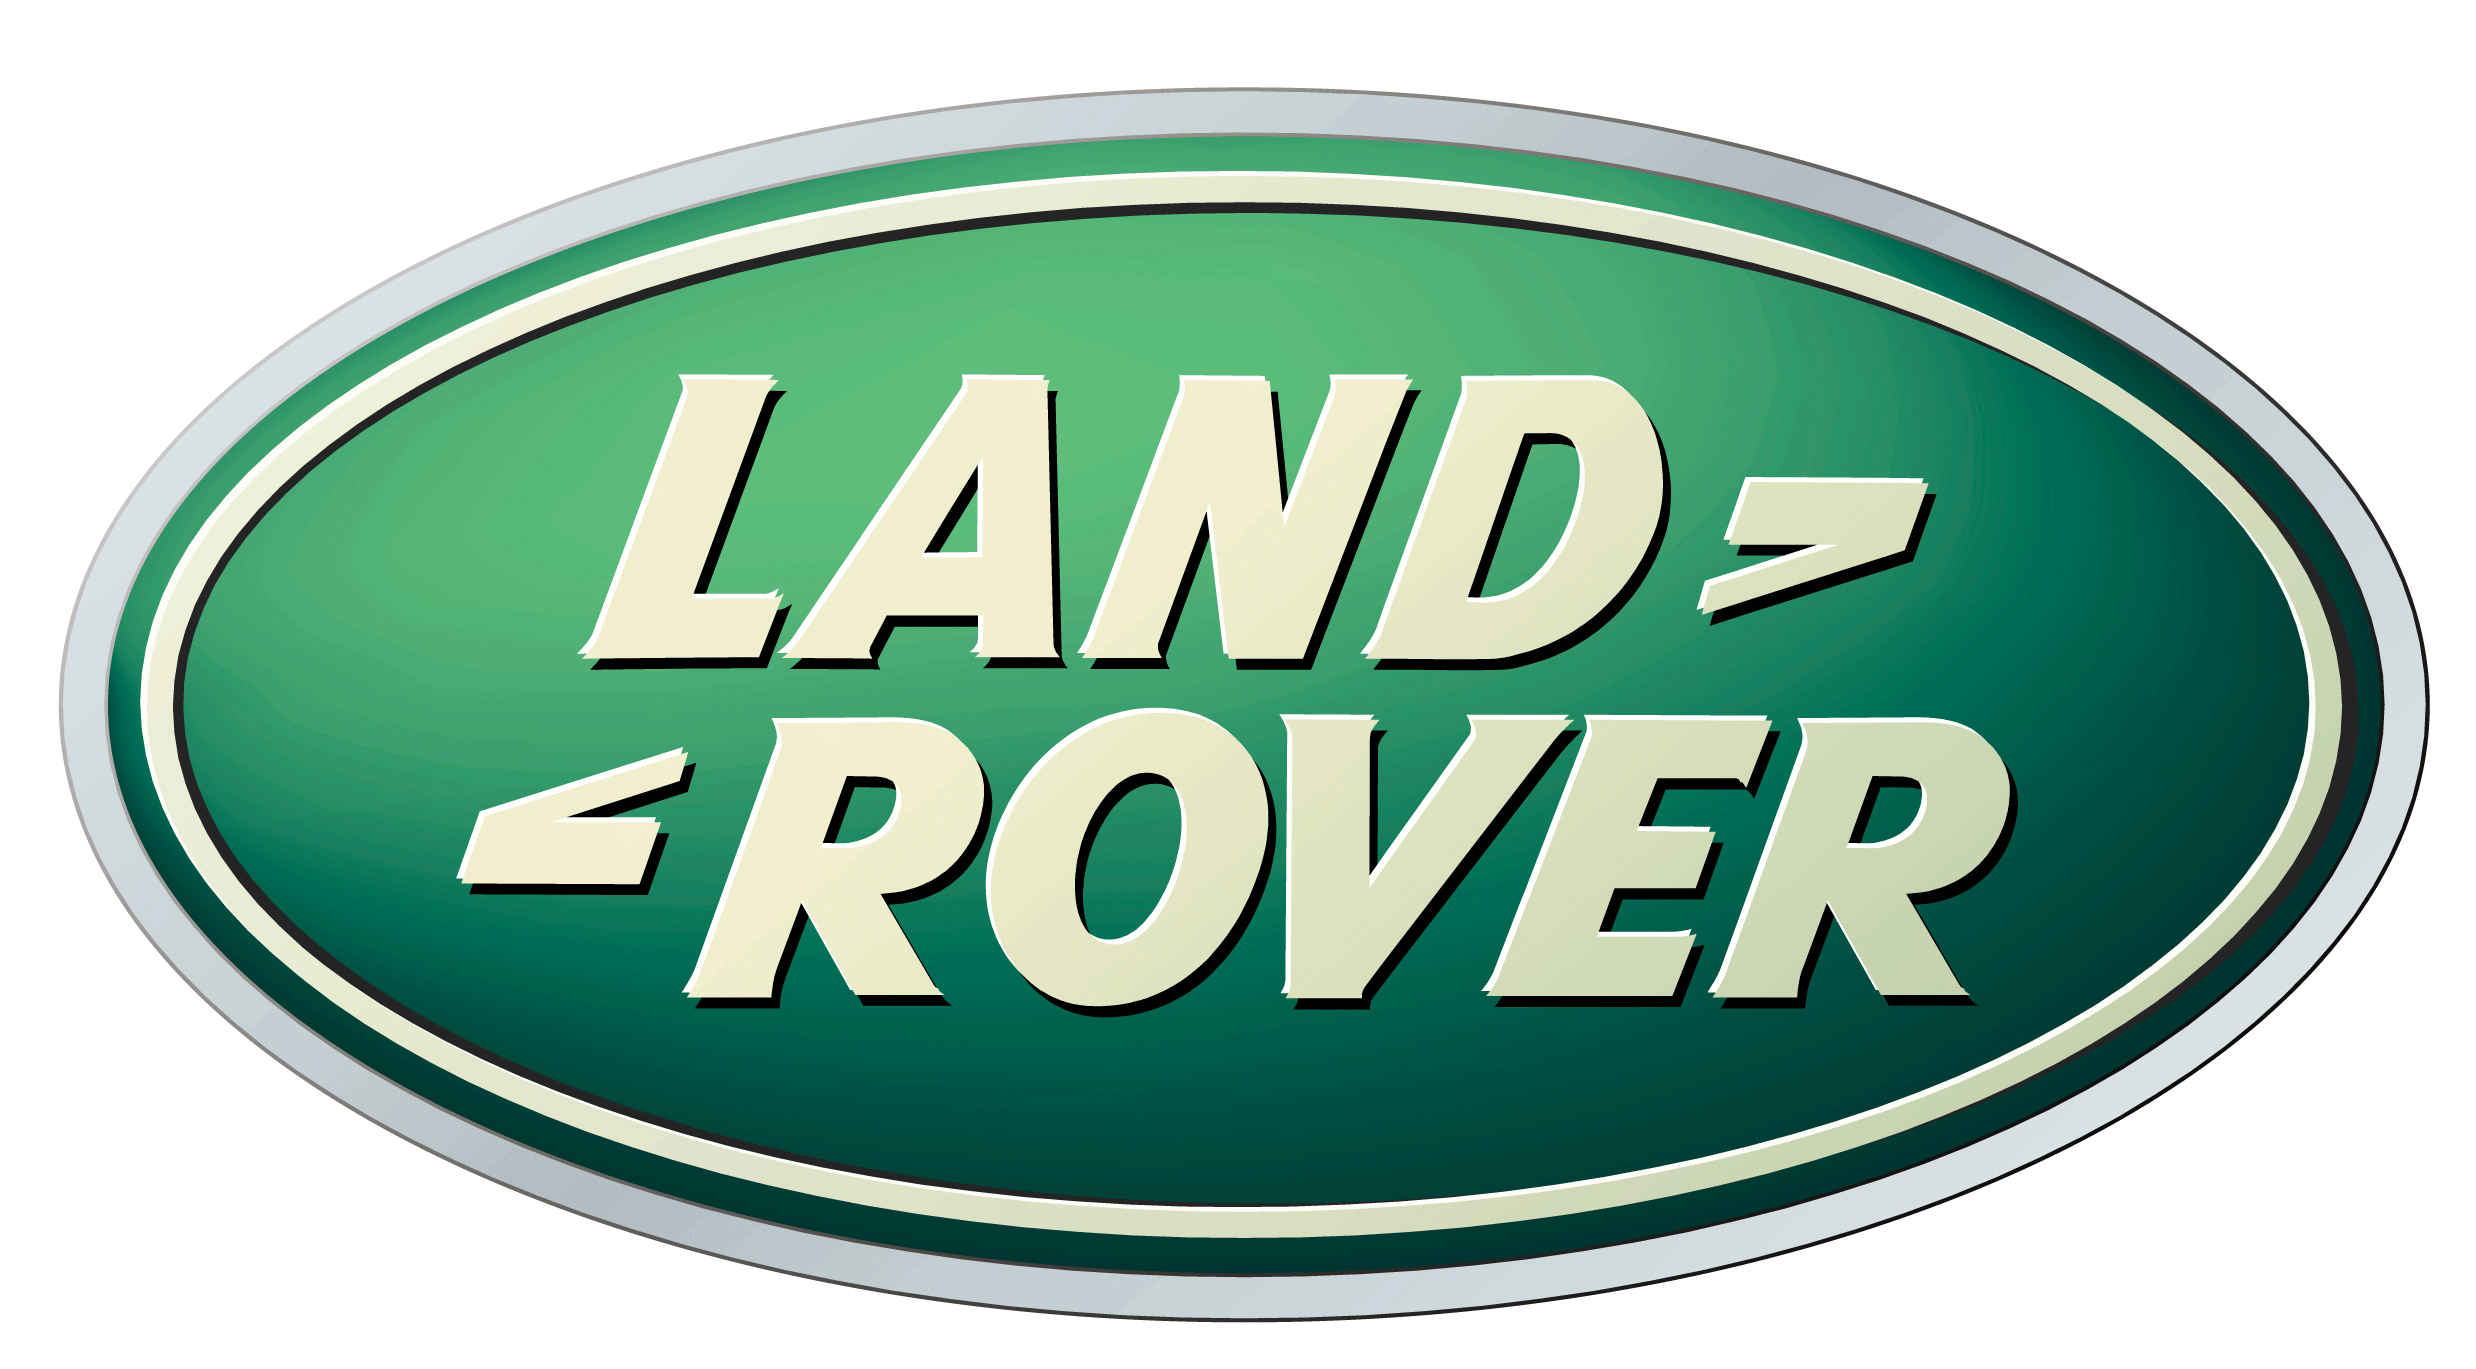 Logotipo de Land Rover PNG